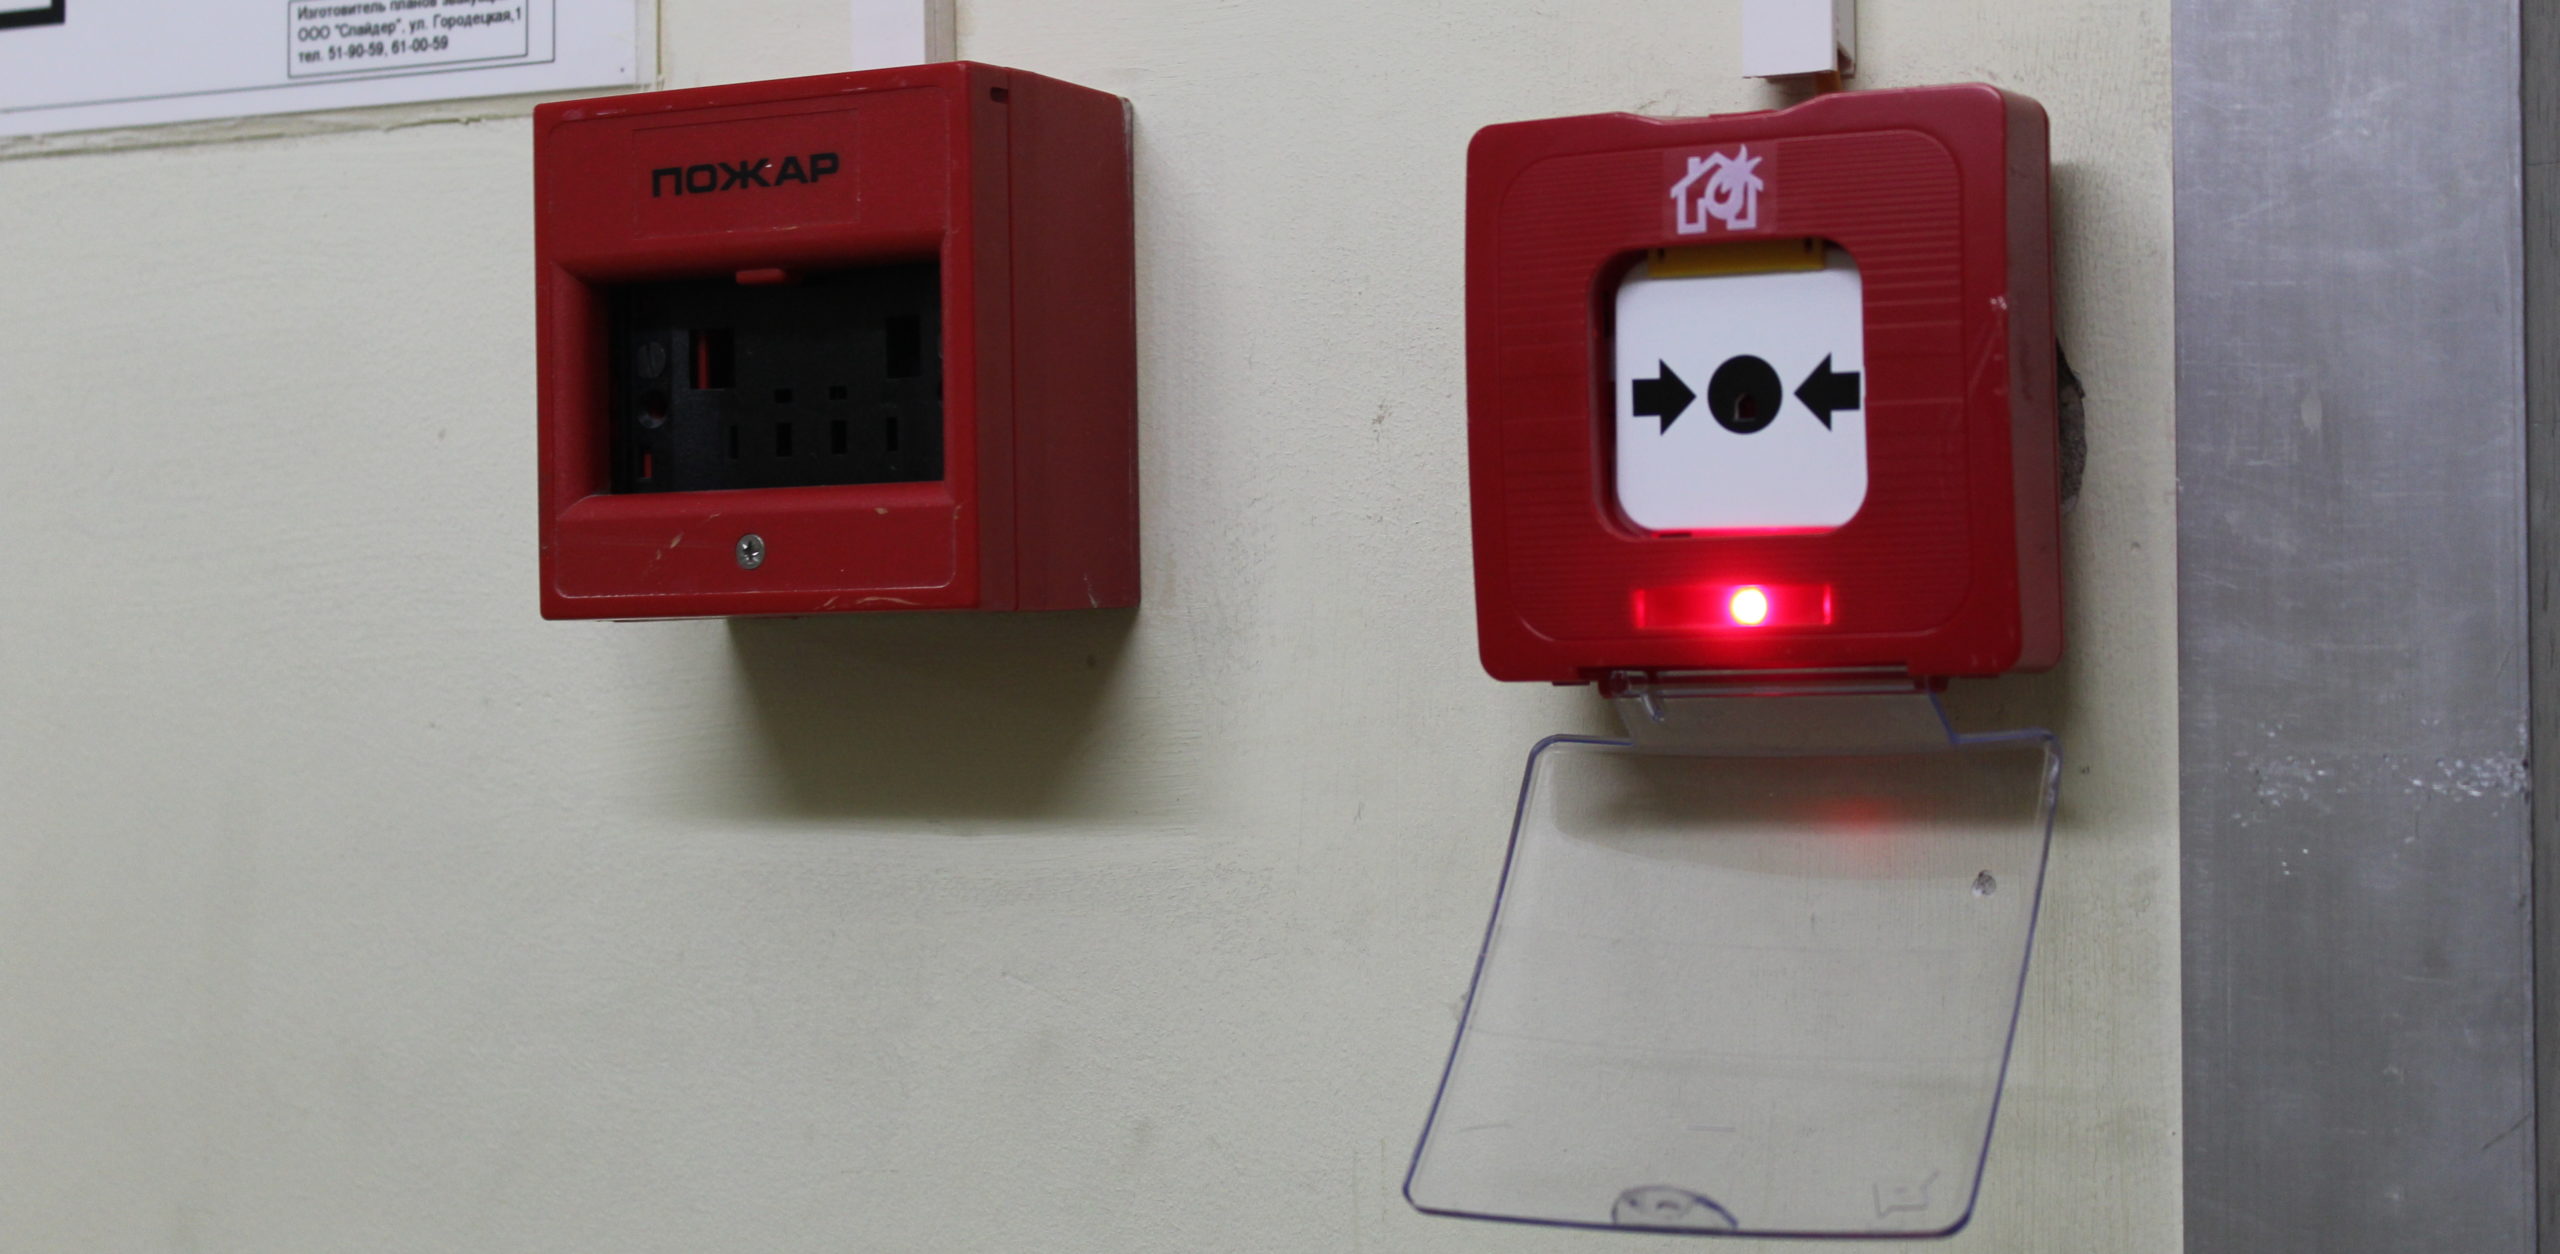 Школьная пожарная сигнализация. Сработала пожарная сигнализация. Кнопка пожарной сигнализации в ТЦ. Коробочка пожарная сигнализация. Сработка пожарной сигнализации.